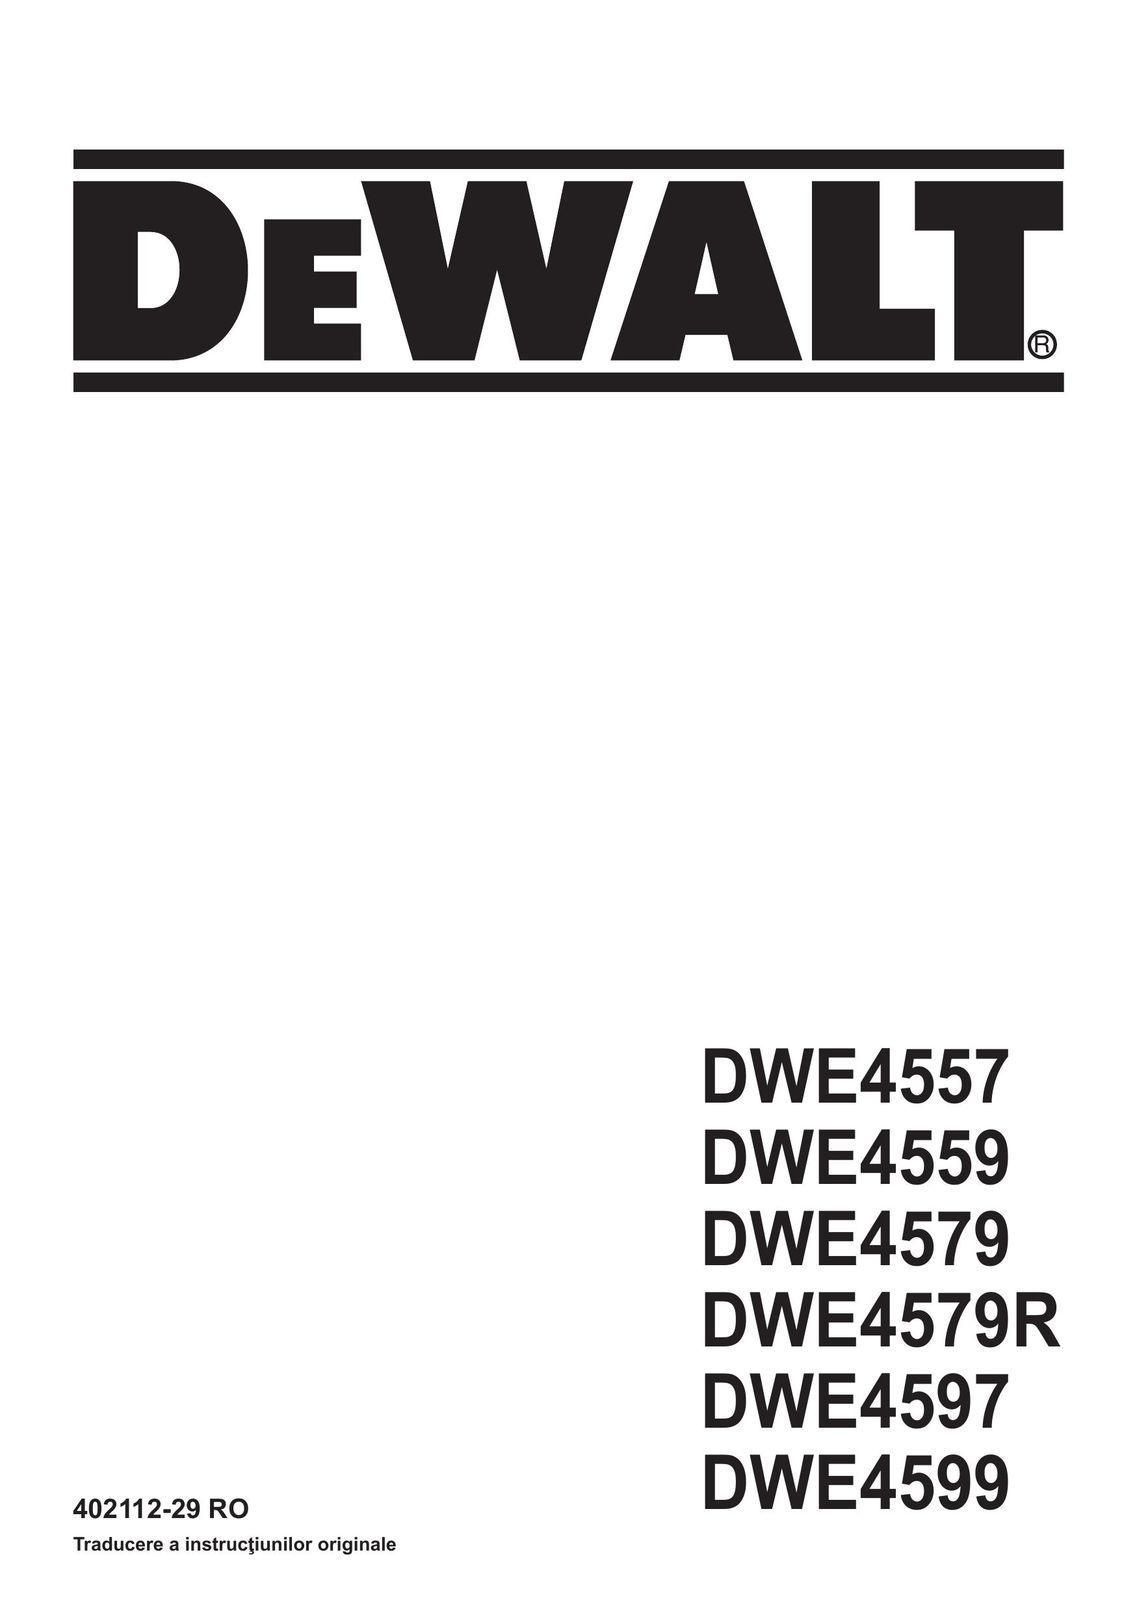 DeWalt DWE4597 Grinder User Manual